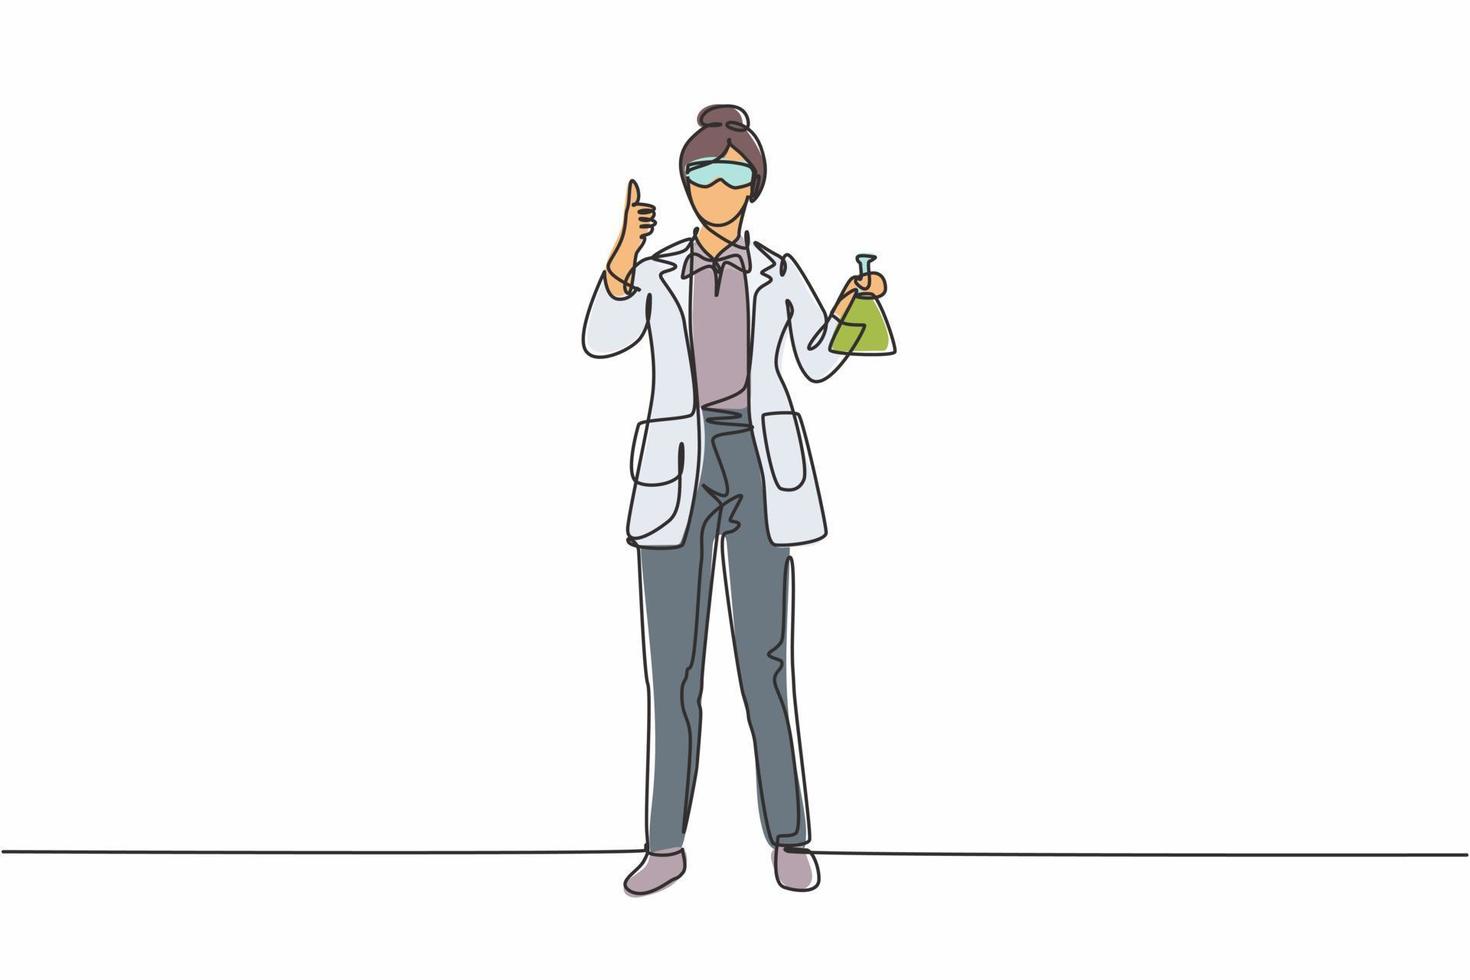 Una científica femenina de dibujo de línea continua se para con un gesto de pulgar hacia arriba y sostiene un tubo medidor lleno de un líquido químico. Ilustración de vector de diseño gráfico de dibujo de una línea dinámica